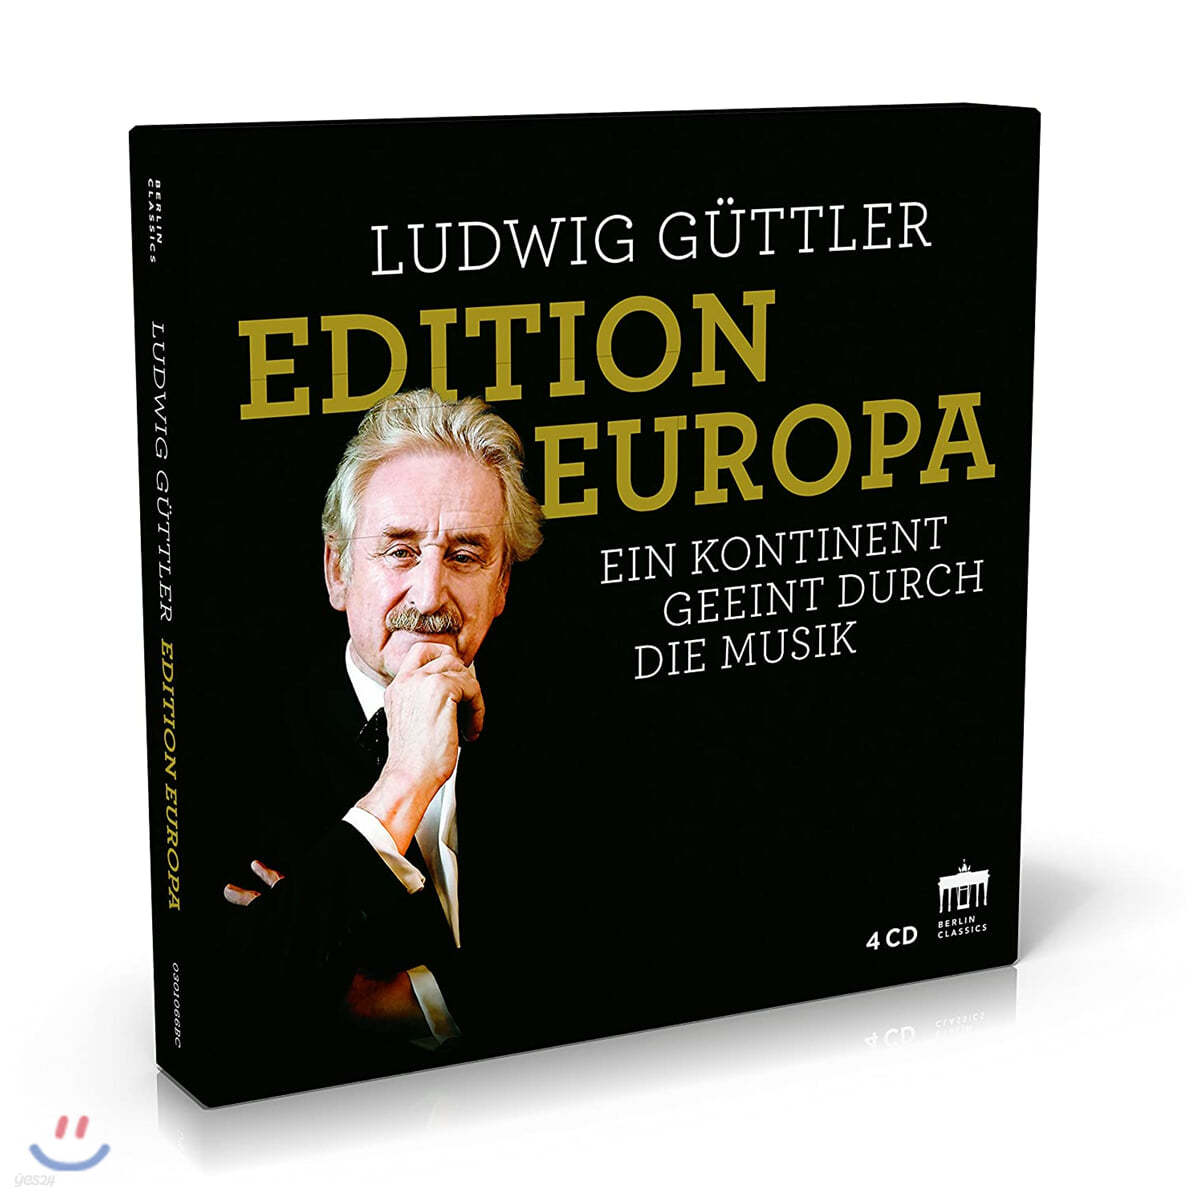 Ludwig Guttler 루트비히 귀틀러 트럼펫 명연주 모음집 (Edition Europa - Ein Kontinent Geeint Durch Die Musik)